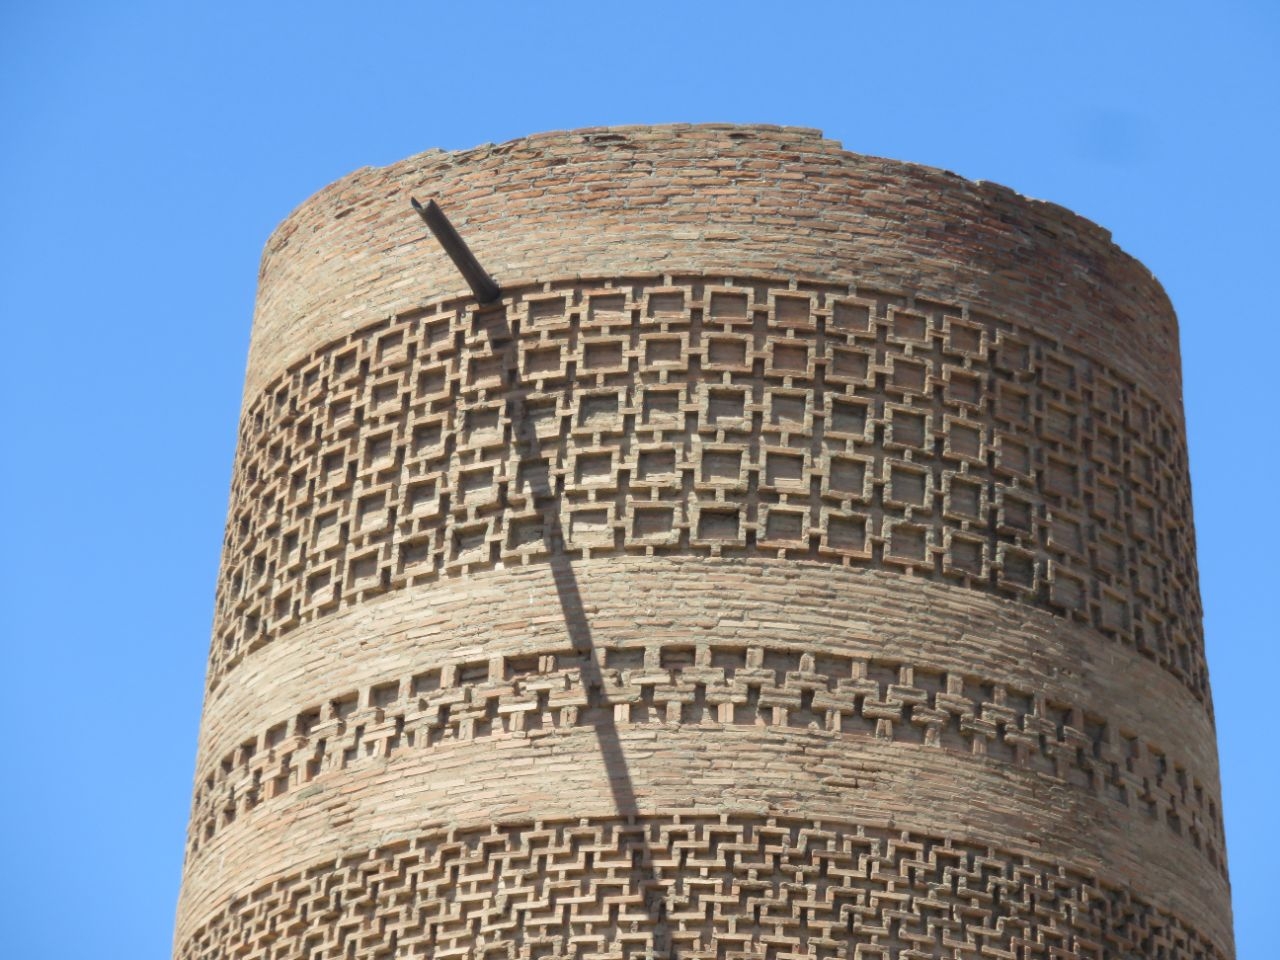 Башня Бурана – архитектурный памятник ЮНЕСКО 11 века. Ч.10